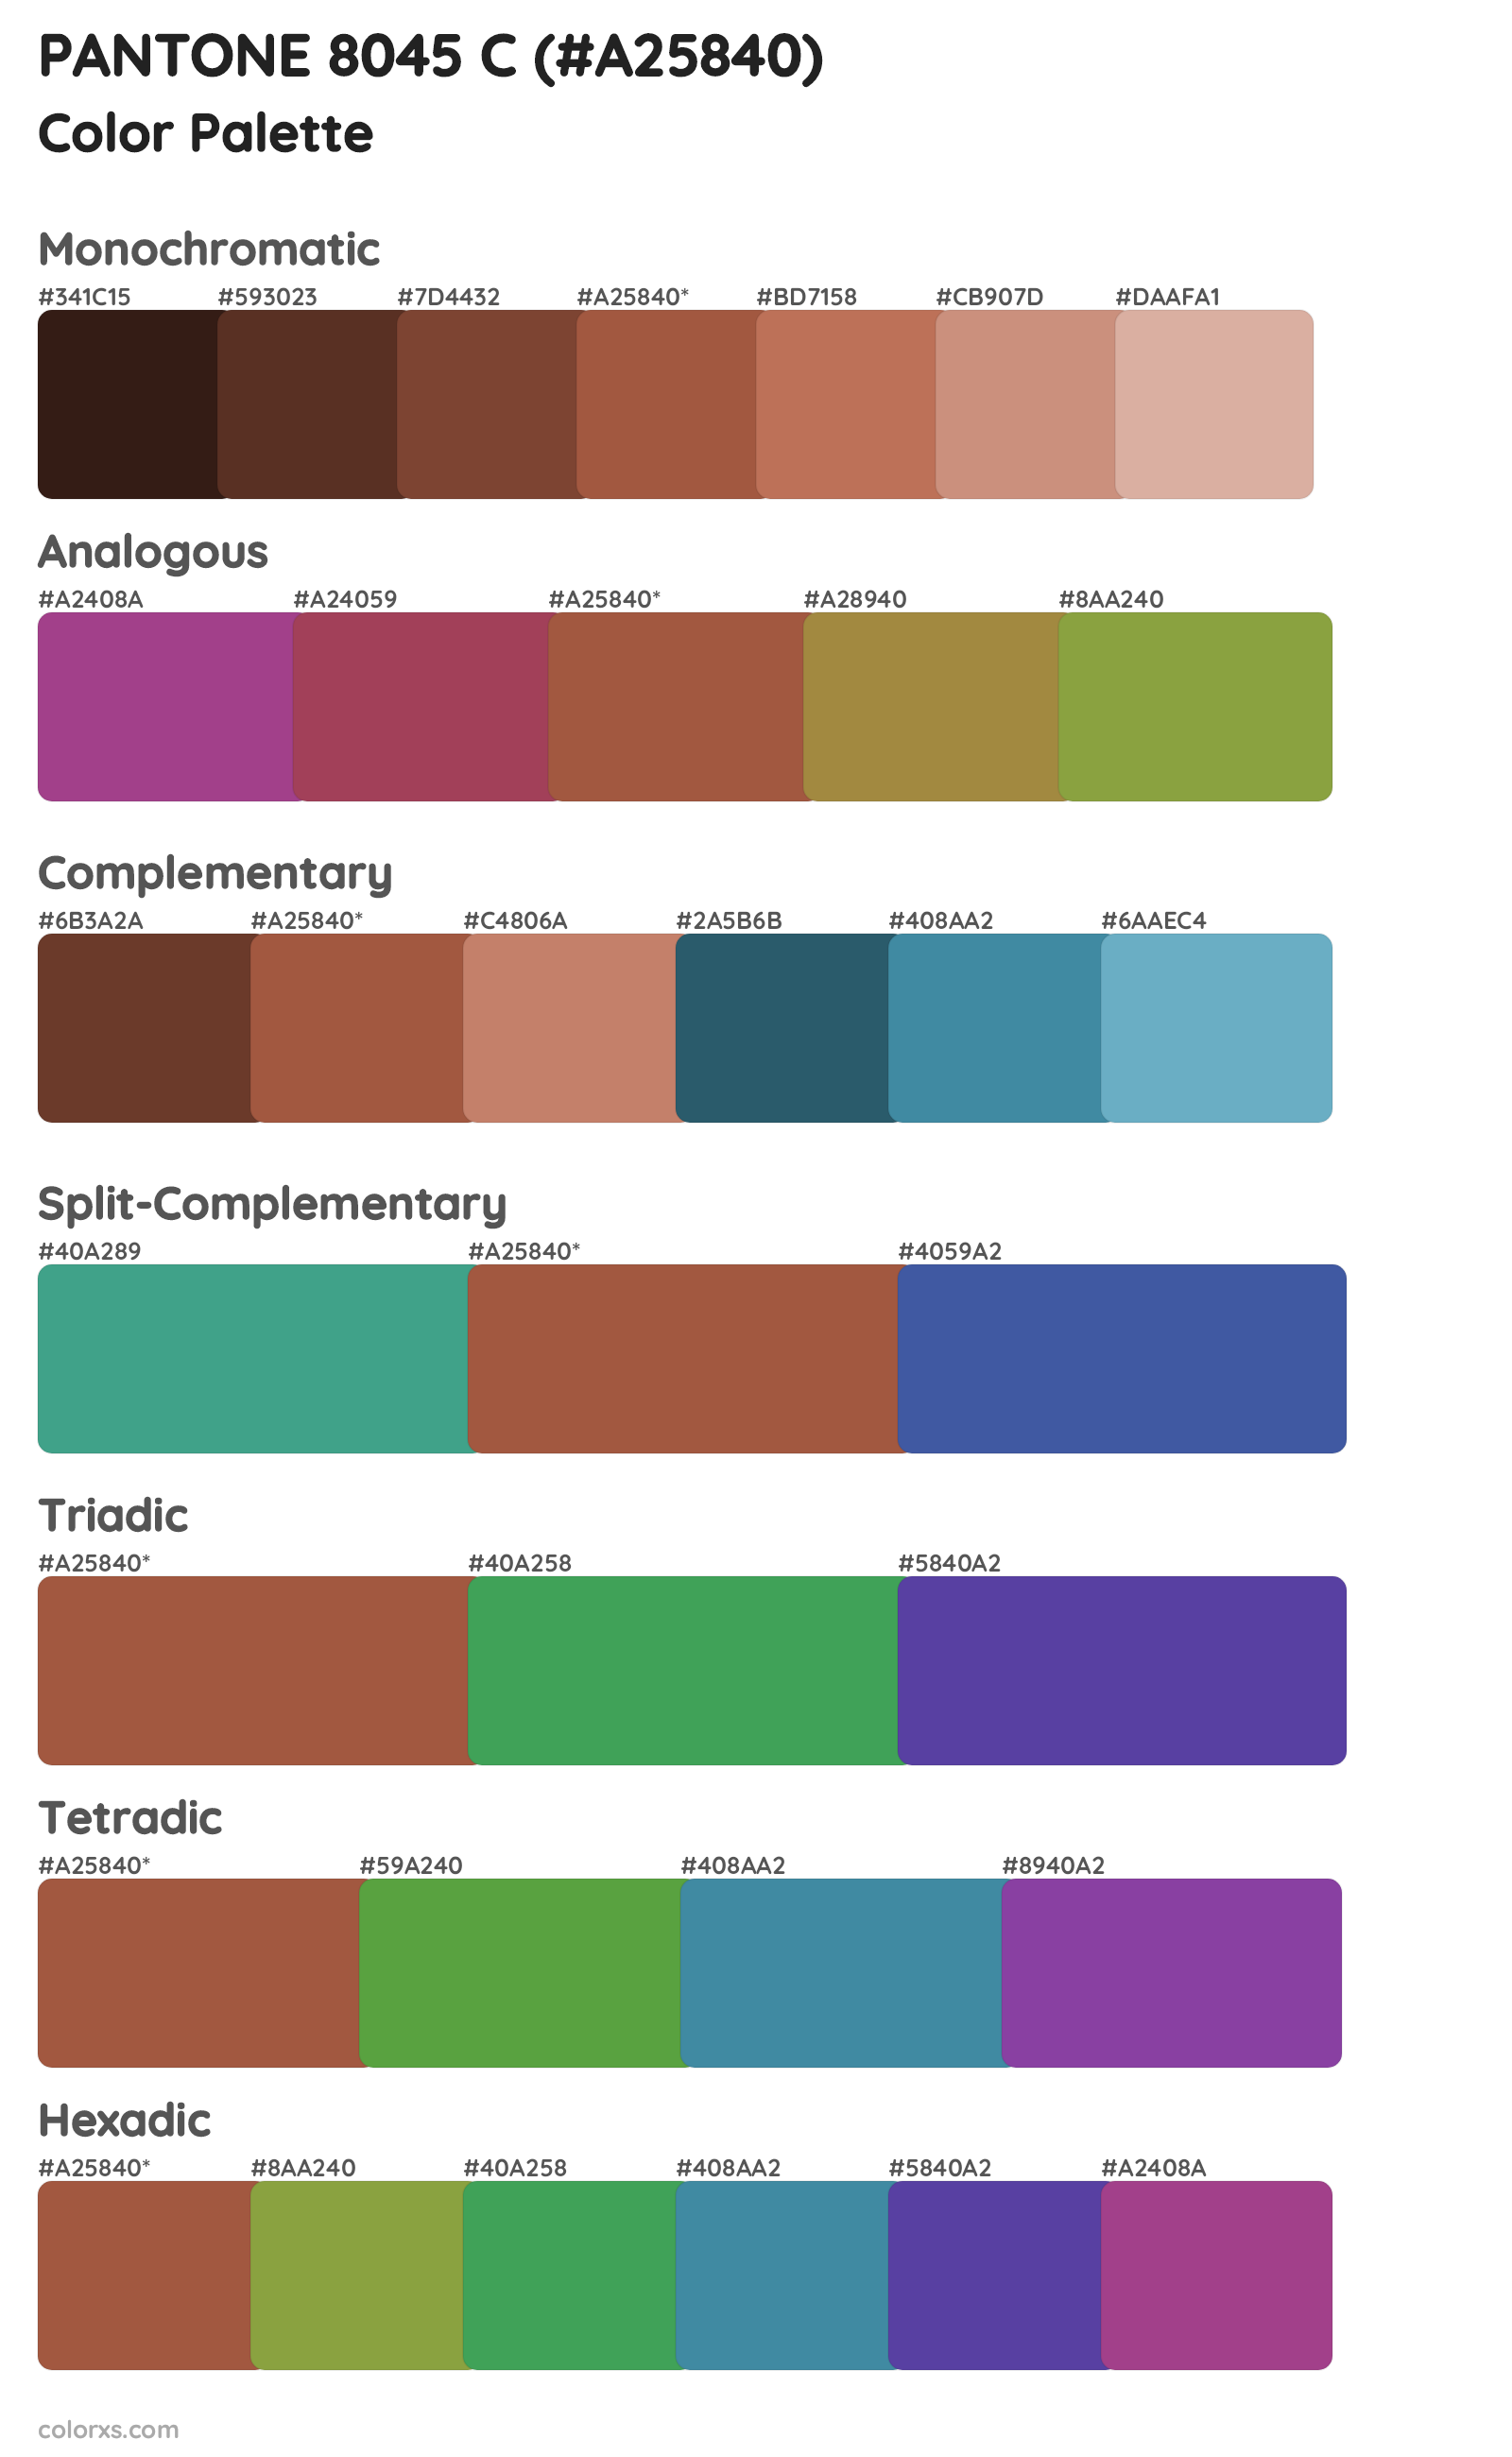 PANTONE 8045 C Color Scheme Palettes